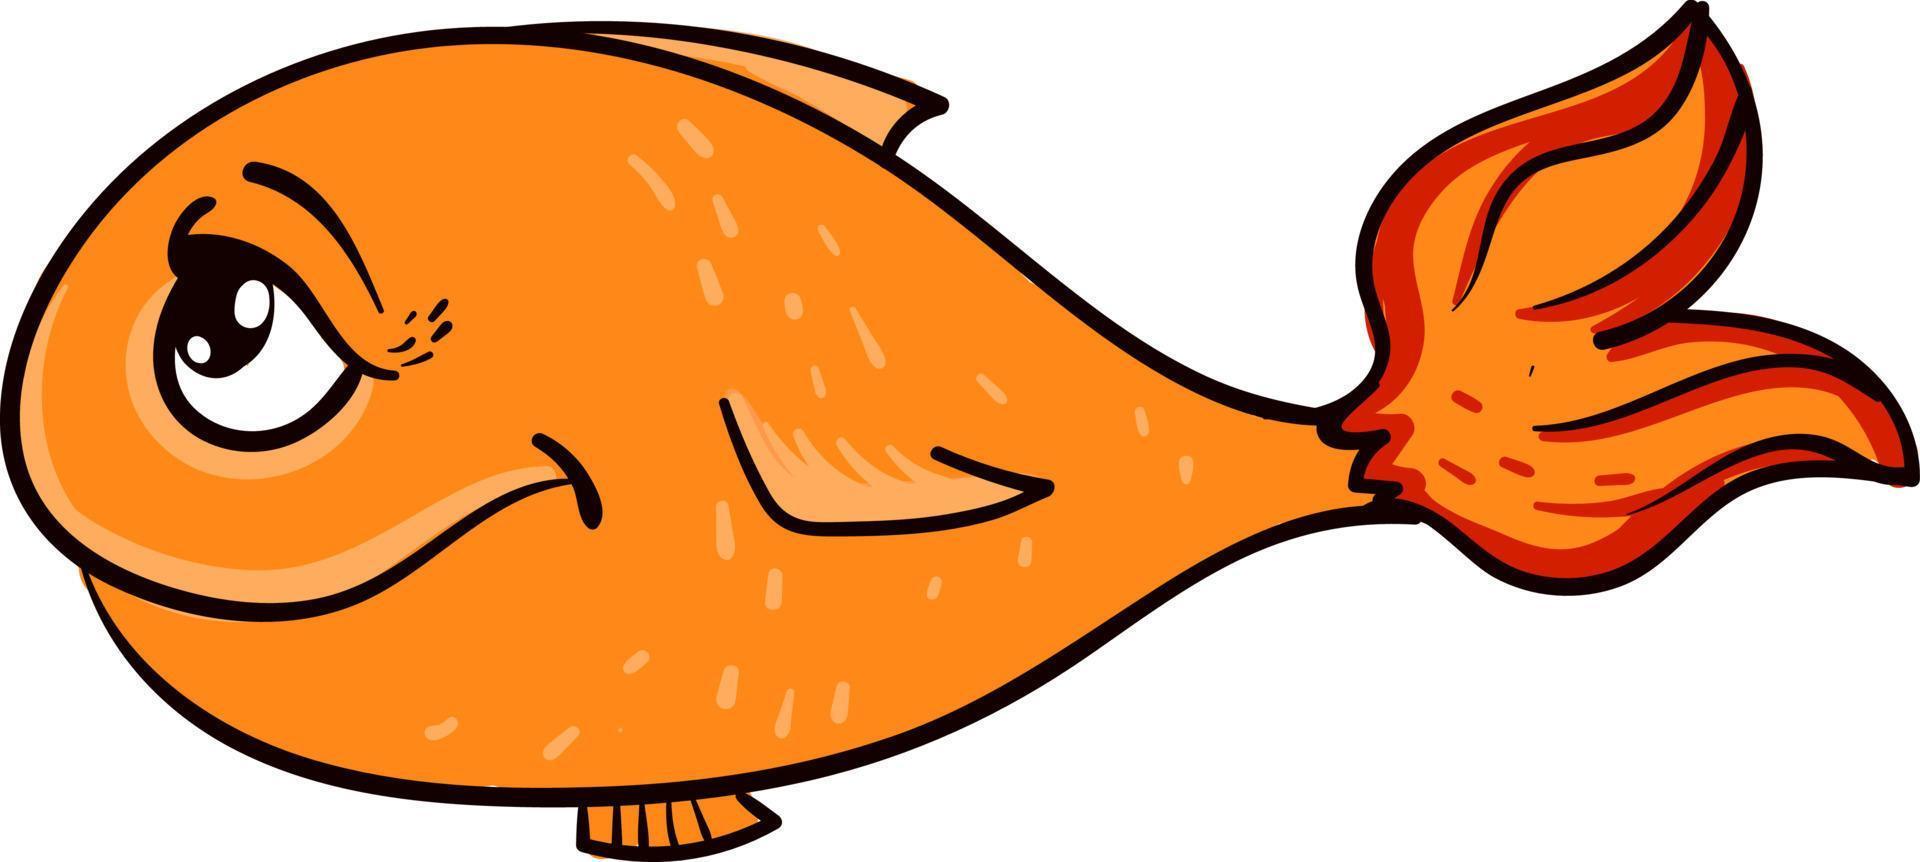 Orangenfisch, Illustration, Vektor auf weißem Hintergrund